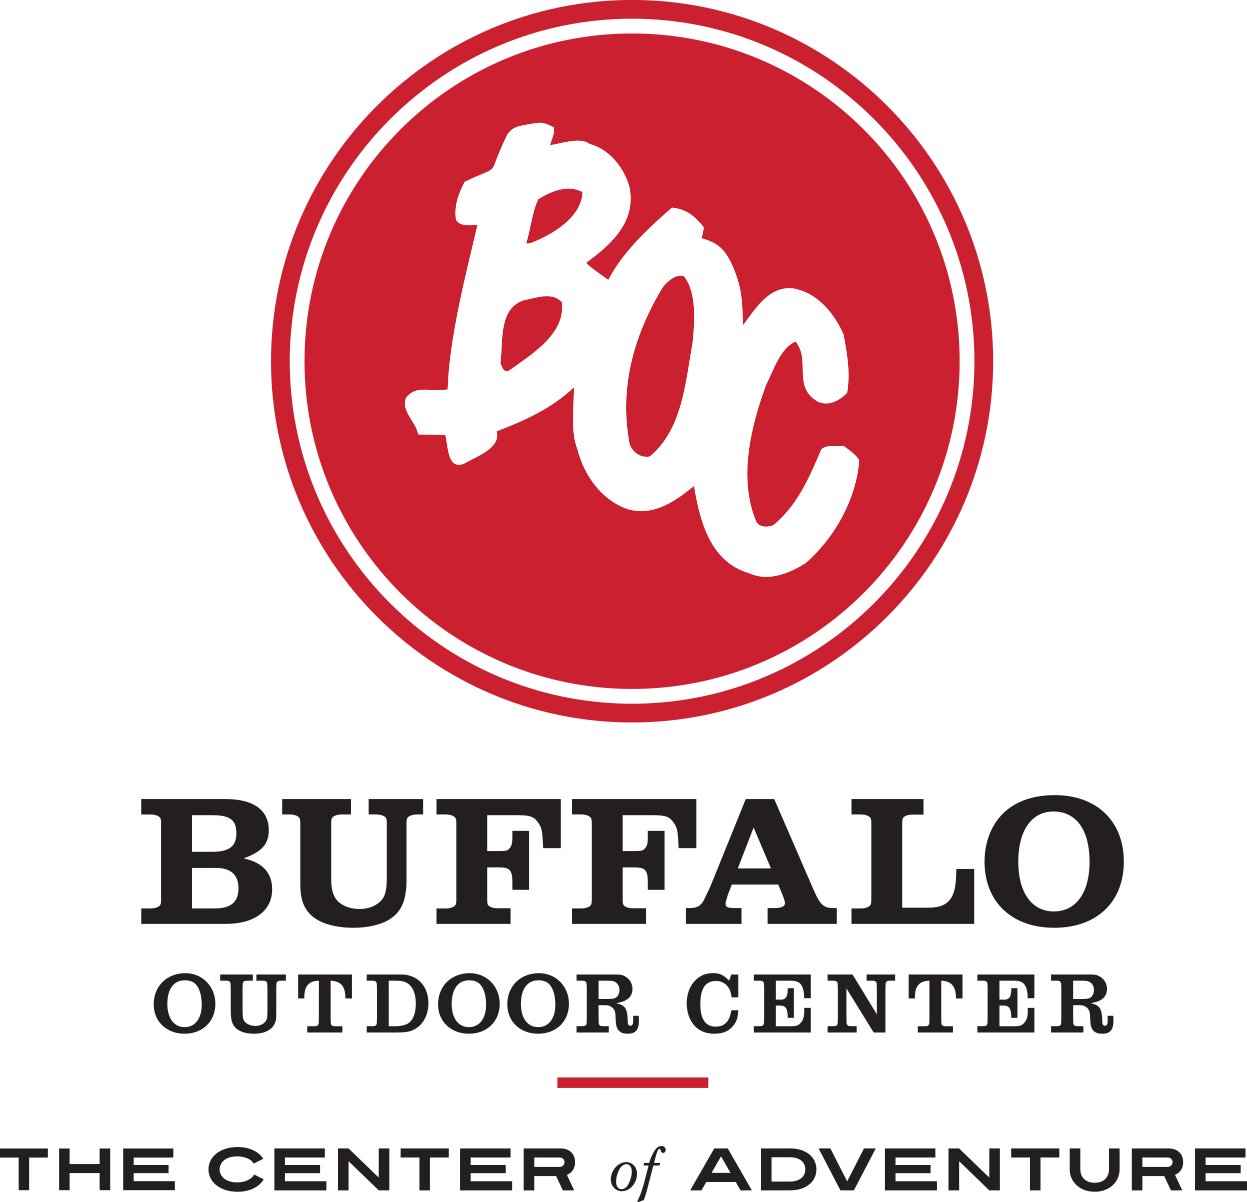 Buffalo Outdoor Center